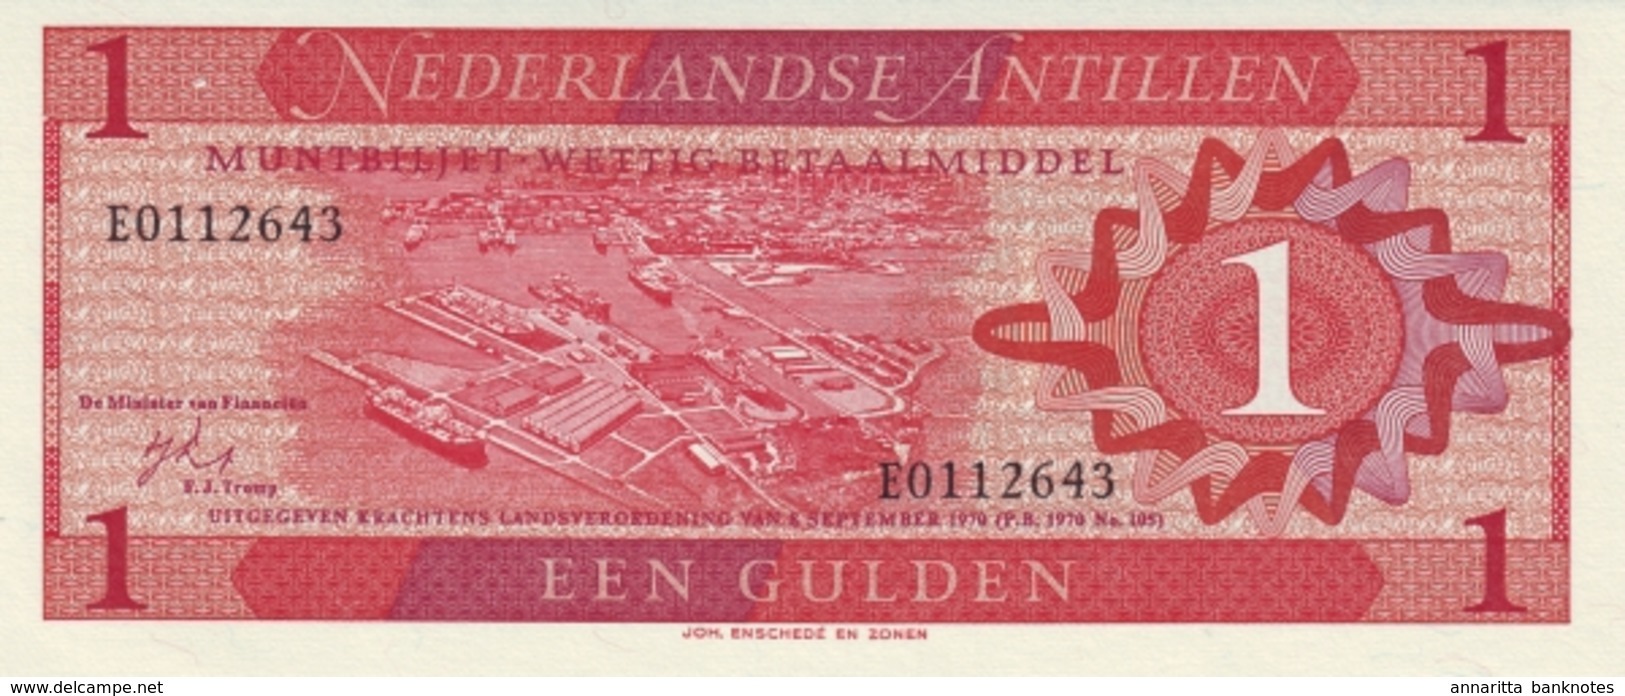 ANTILLES NÉERLANDAISES 1 GULDEN 1970 P-20 NEUF [AN102a] - Nederlandse Antillen (...-1986)